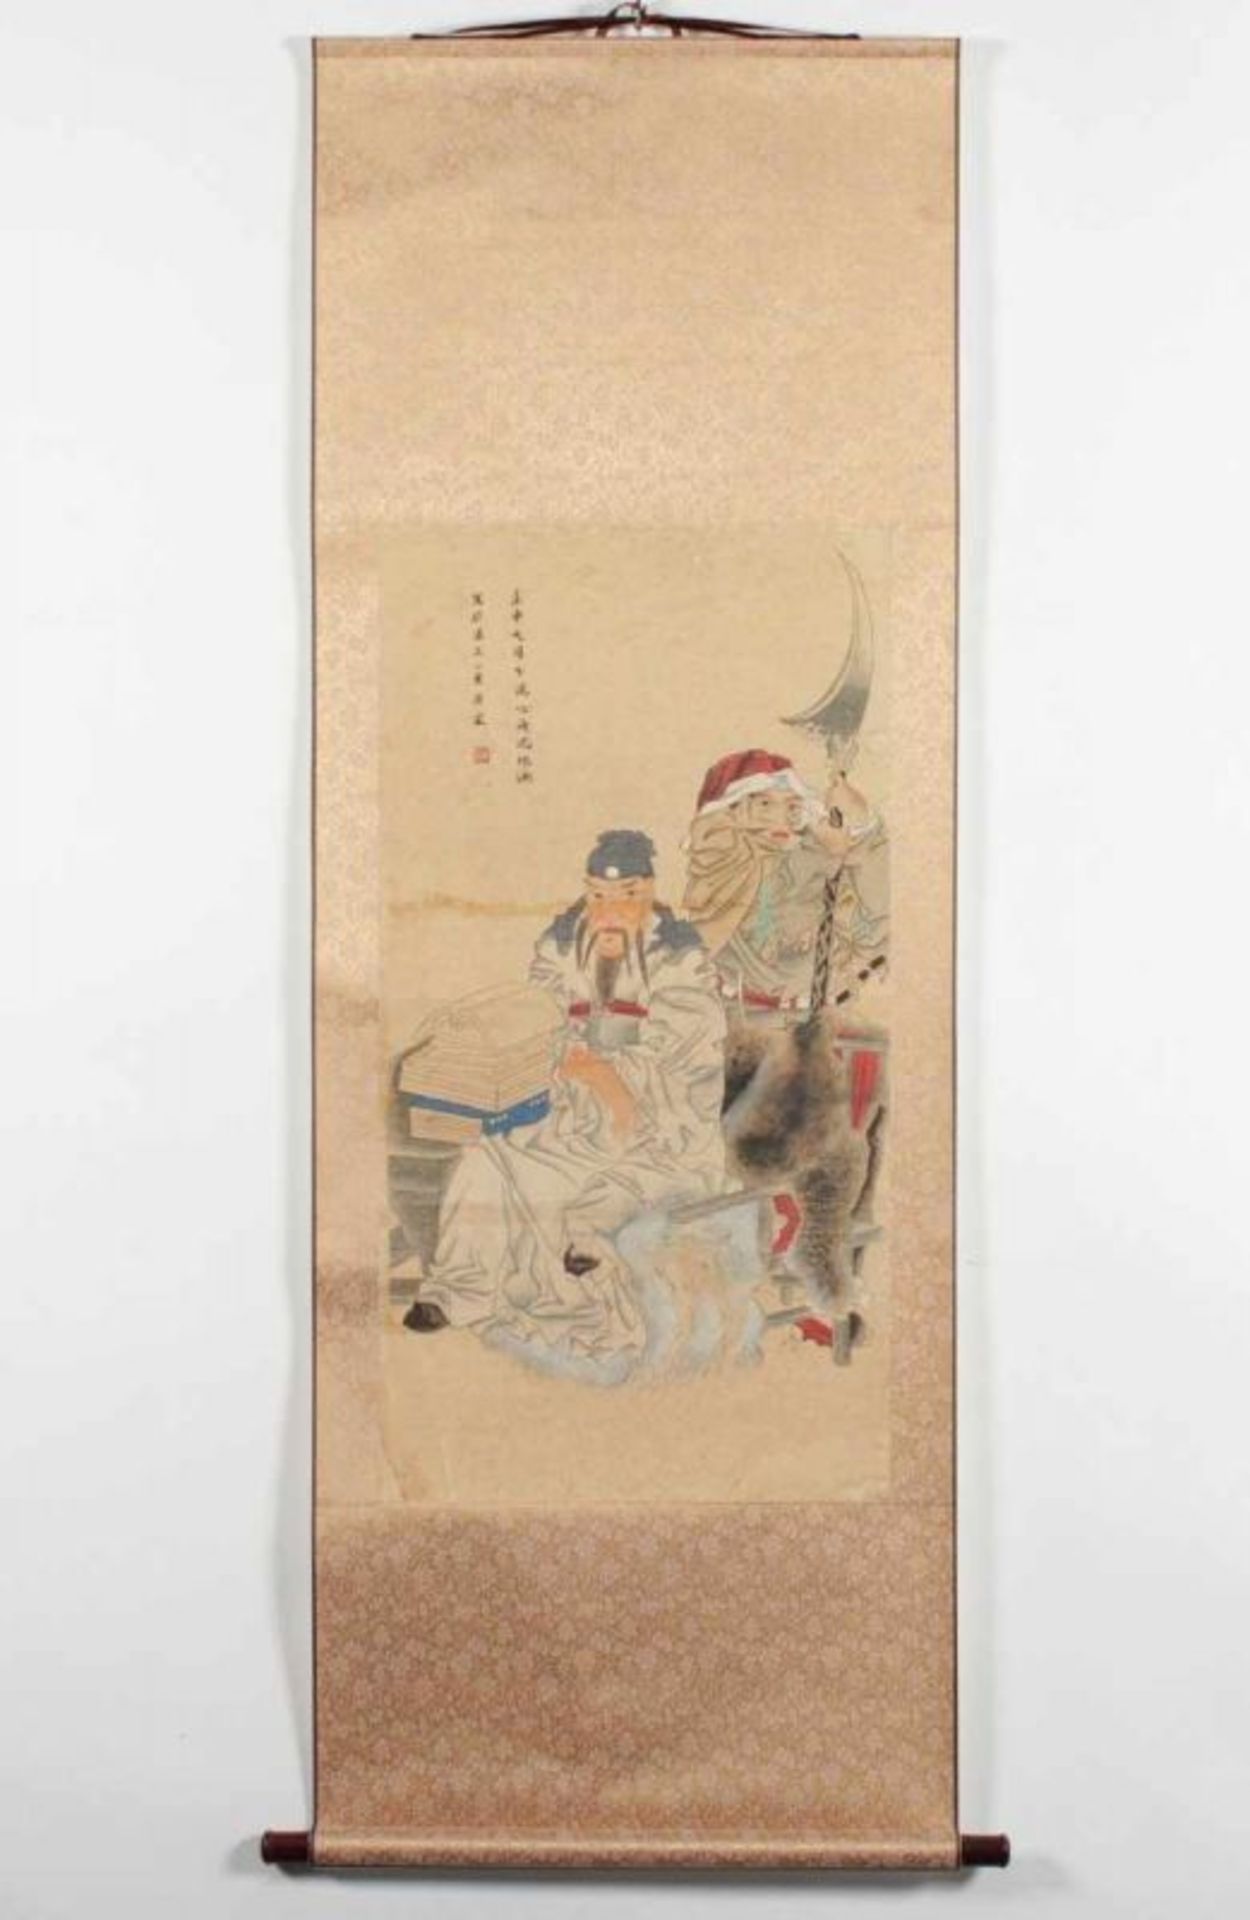 ROLLBILD, Tusche und Farben auf Papier, zwei Gottheiten, in der Art von SHEN ZHAOHAN (1855-1941), - Bild 2 aus 4